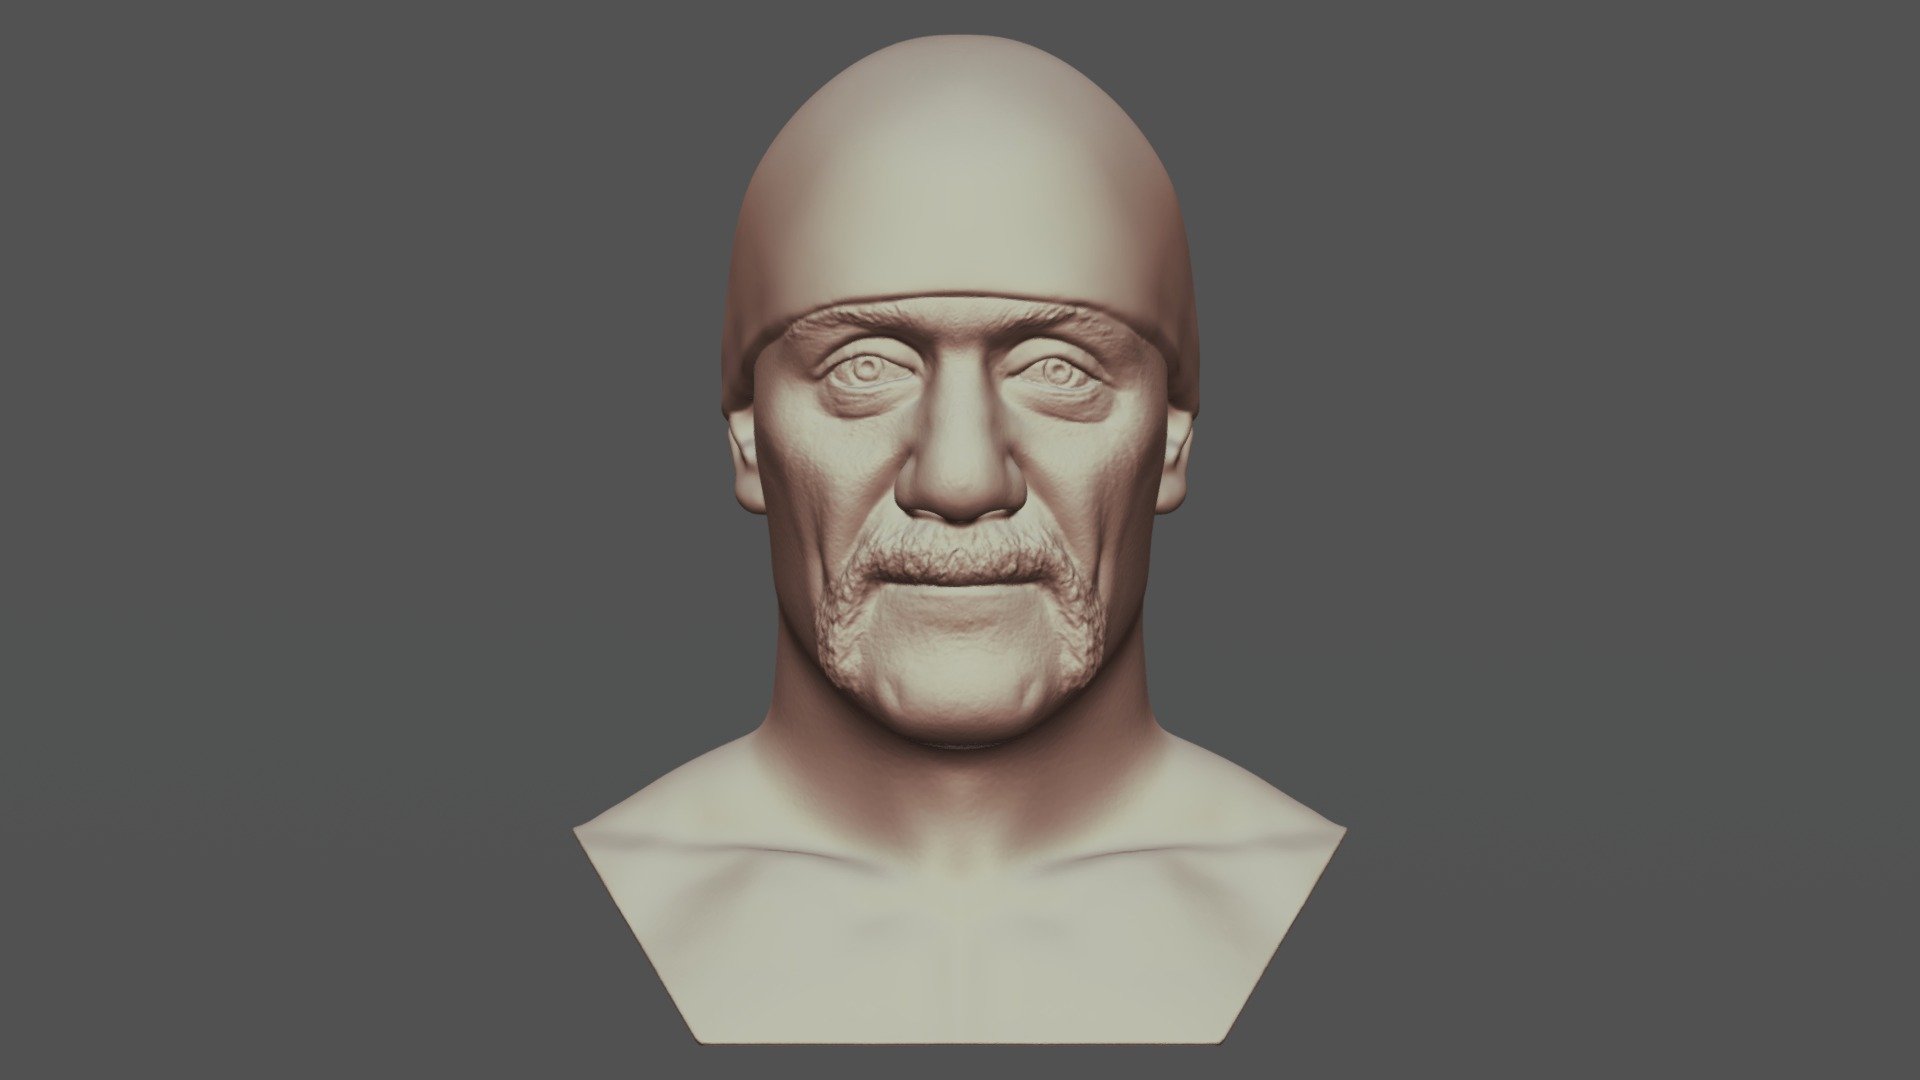 3D model (stl) Old Man Face sculpt